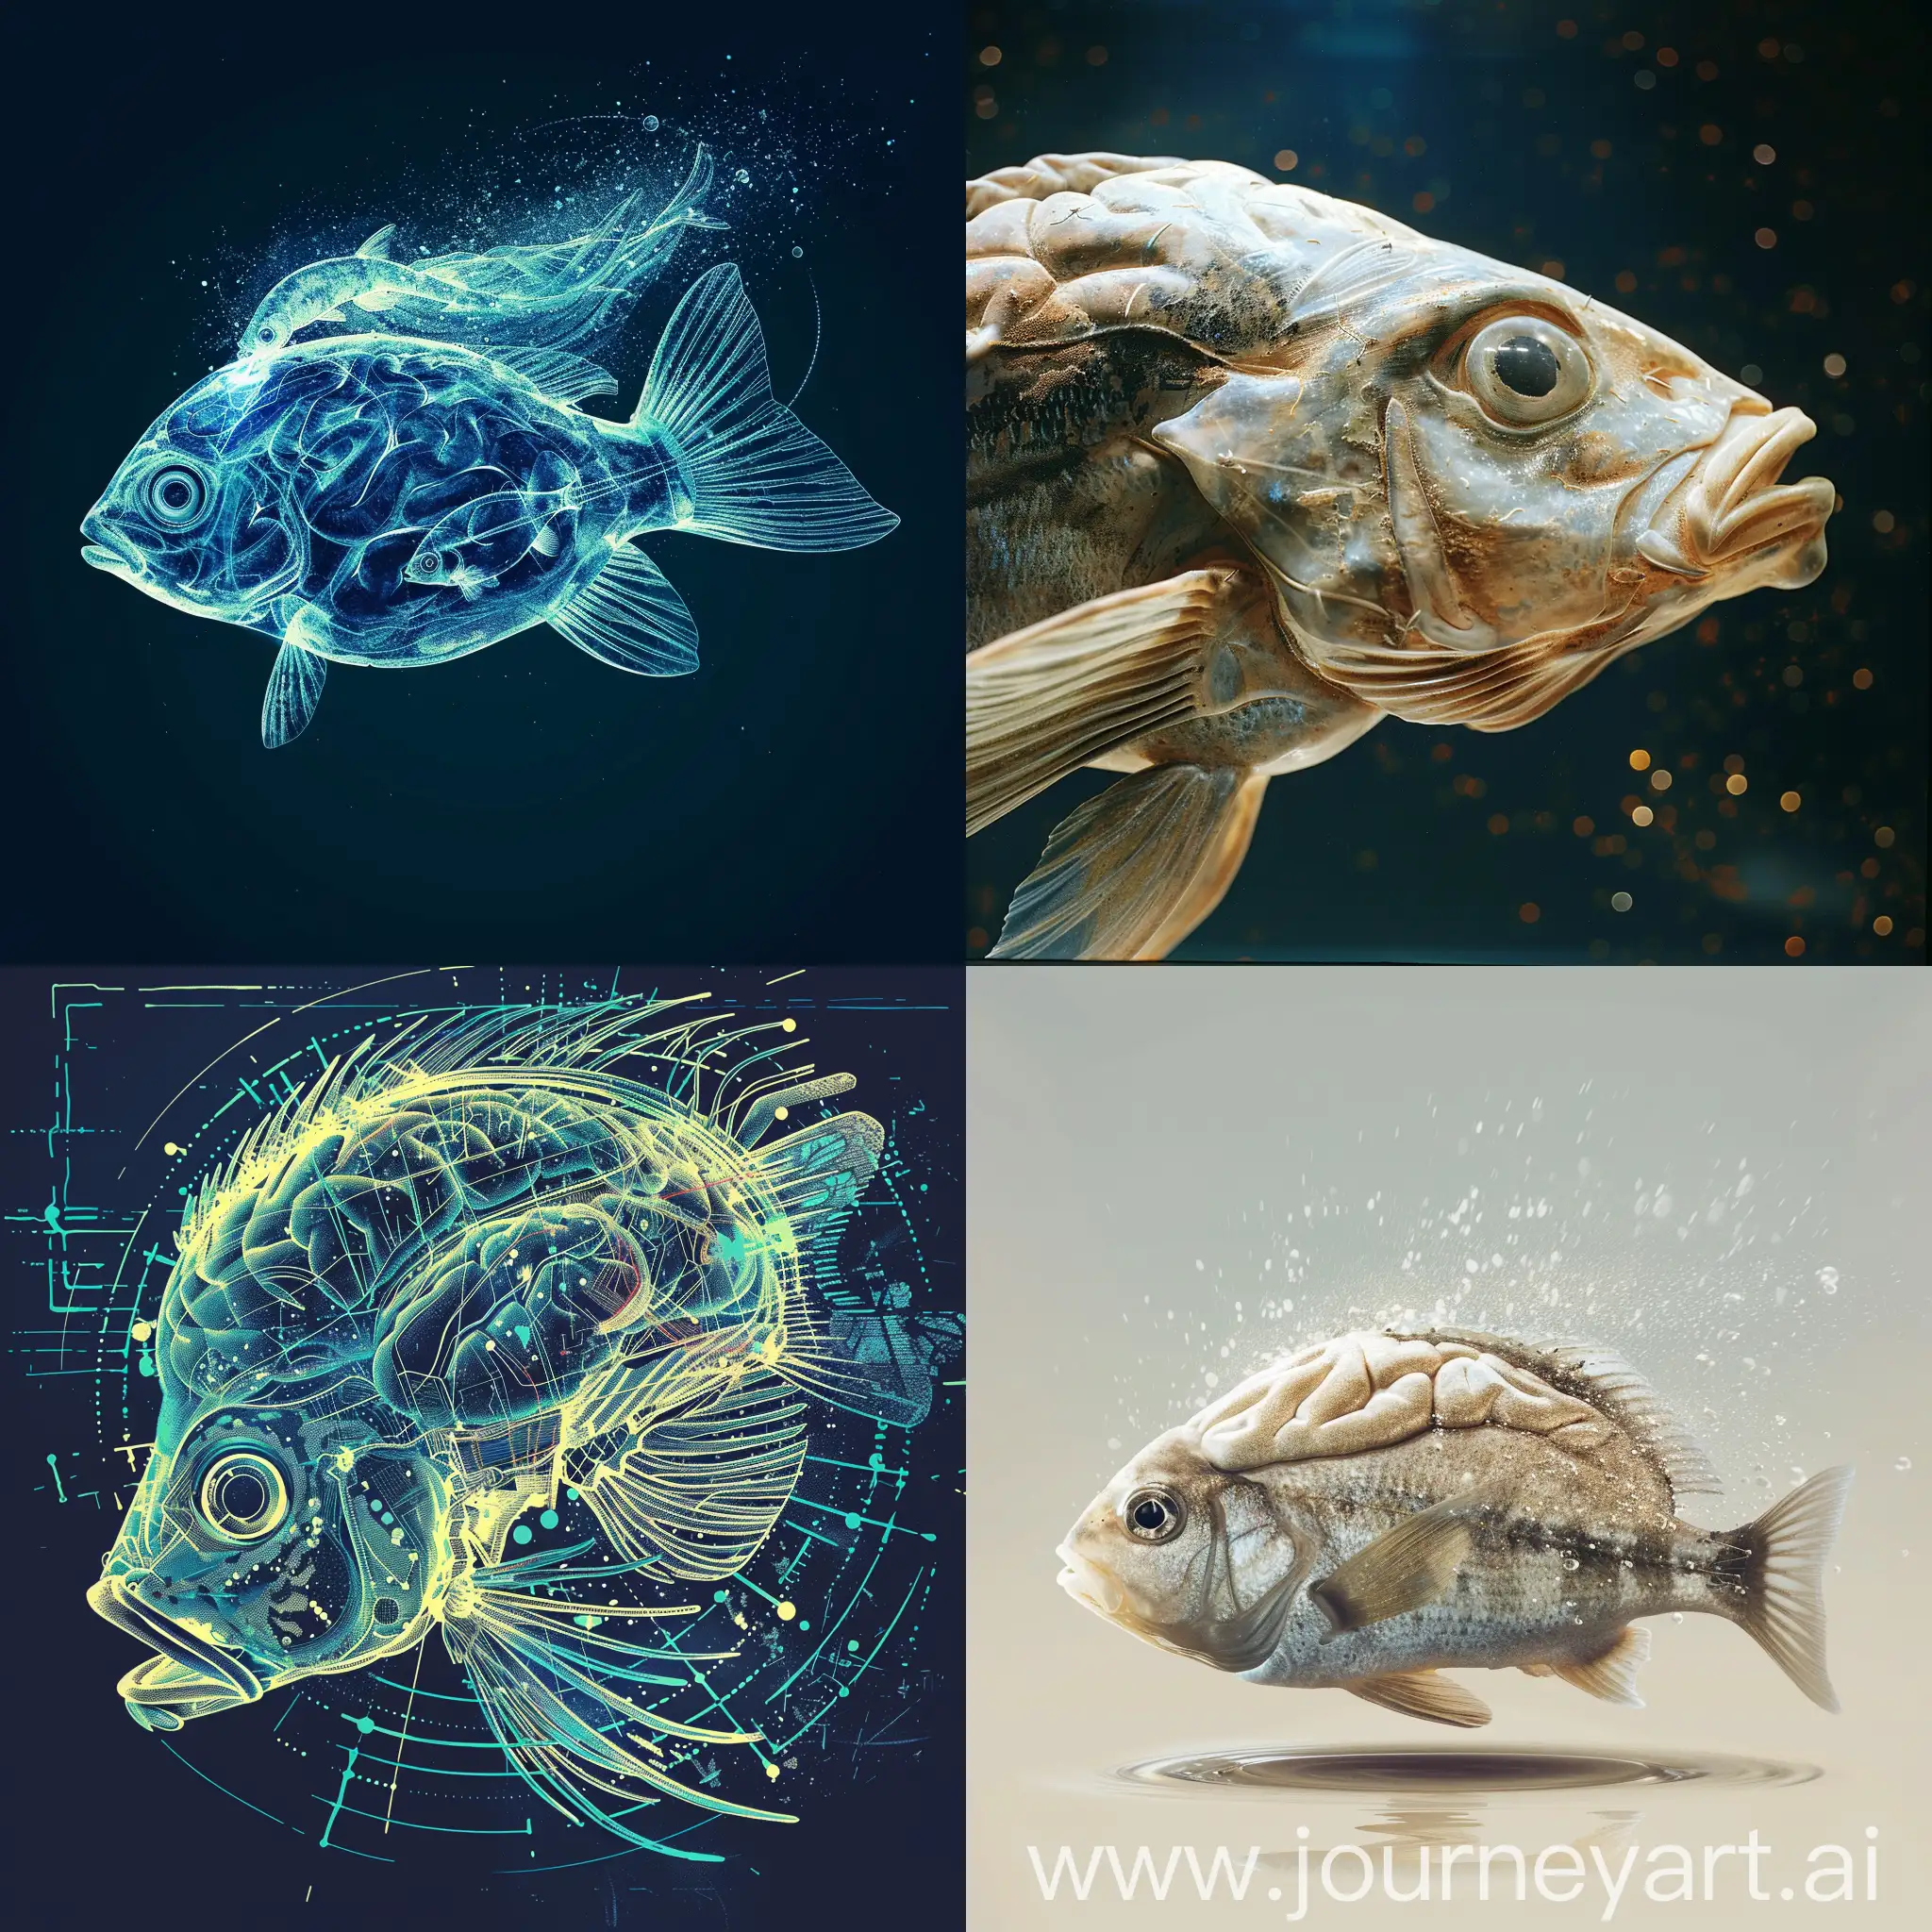 设计一个形象，包括这样的一个主题：从鱼脑到人脑——智能的演化与未来